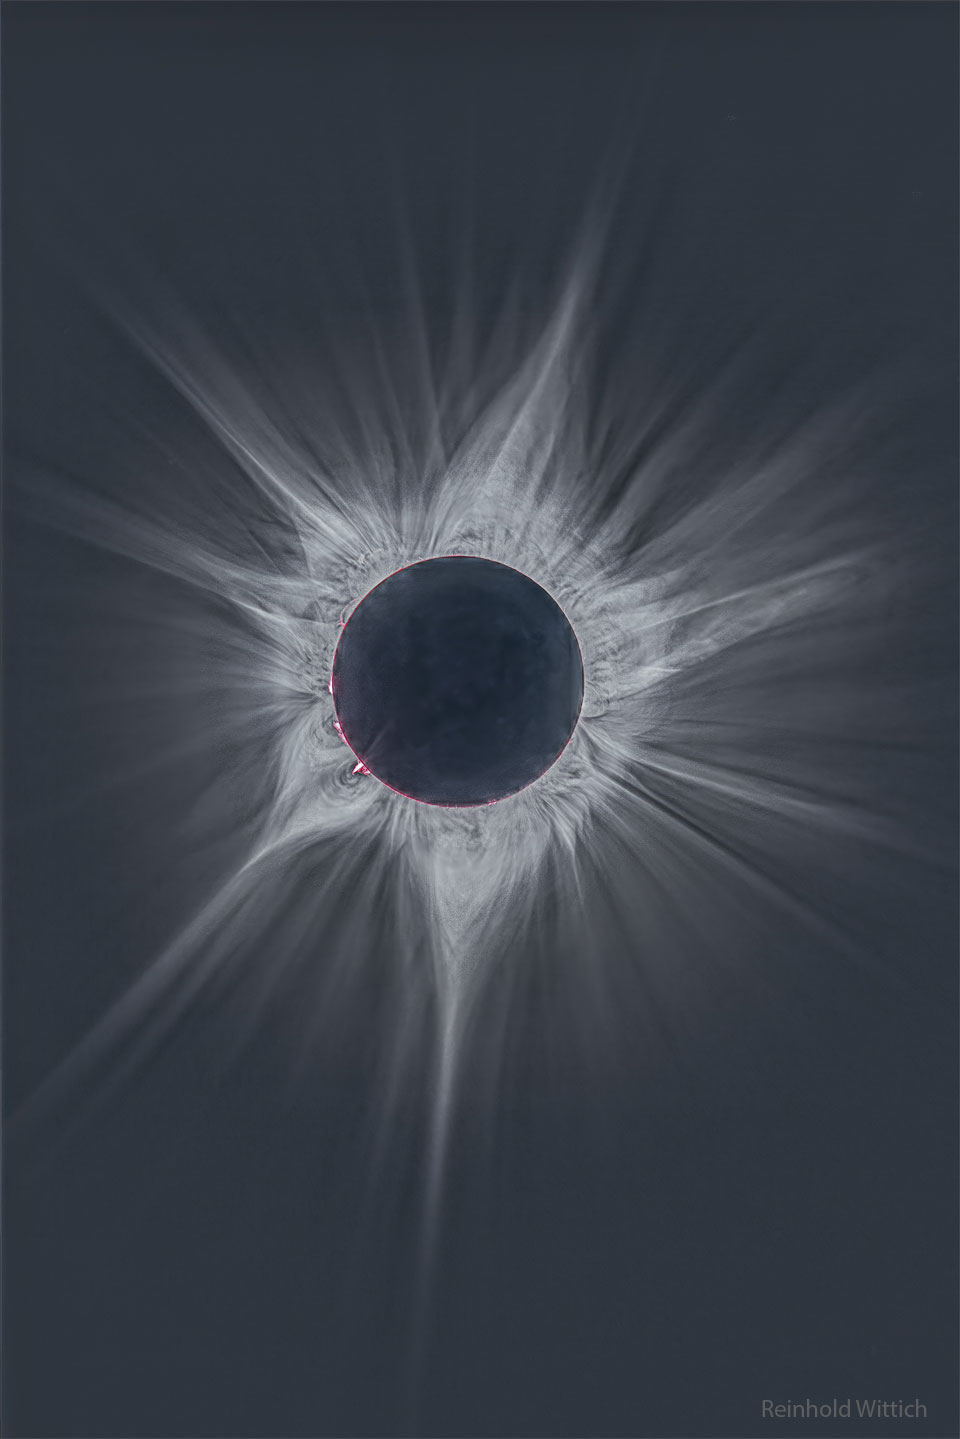 Obraz przedstawia głębokie ujęcie otaczającej Słońce korony
podczas zaćmienia całkowitego z kwietnia 2023 r. Tarcza centralna
jest ciemna, a z niej wydaje się wychodzić wiele skomplikowanych jasnych
promieni. Wokół krawędzi Słońca można dostrzec kilka gorących różowych
włókien. Zobacz opis. Po kliknięciu obrazka załaduje się wersja
 o największej dostępnej rozdzielczości.